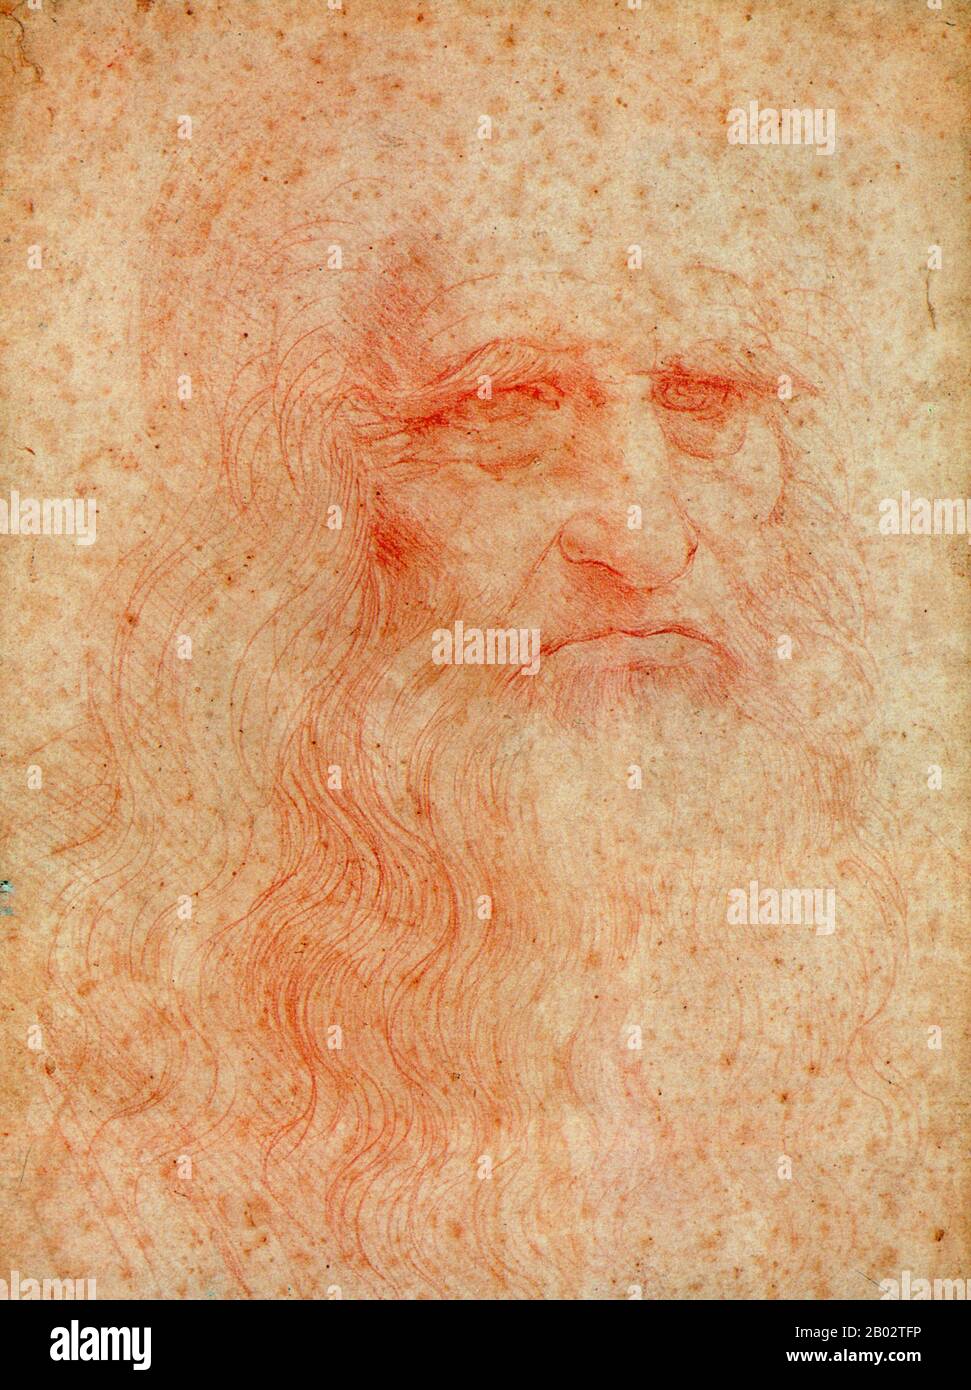 Leonardo di ser Piero da Vinci (15. April 1452 - 2. Mai 1519) war ein italienischer Universalgelehrter, Maler, Bildhauer, Architekt, Musiker, Musiker, Mathematik, Ingenieur, Erfinder, Anatom, Geologe, Kartograf, Botaniker und Schriftsteller. Er gilt weithin als einer der größten Maler aller Zeiten und vielleicht der diversiellste talentierte Mensch, der jemals gelebt hat. Sein Genie, vielleicht mehr als das jeder anderen Figur, verkörperte das humanistische ideal der Renaissance. Leonardo wurde oft als Archetyp des Renaissance-Menschen bezeichnet. Stockfoto